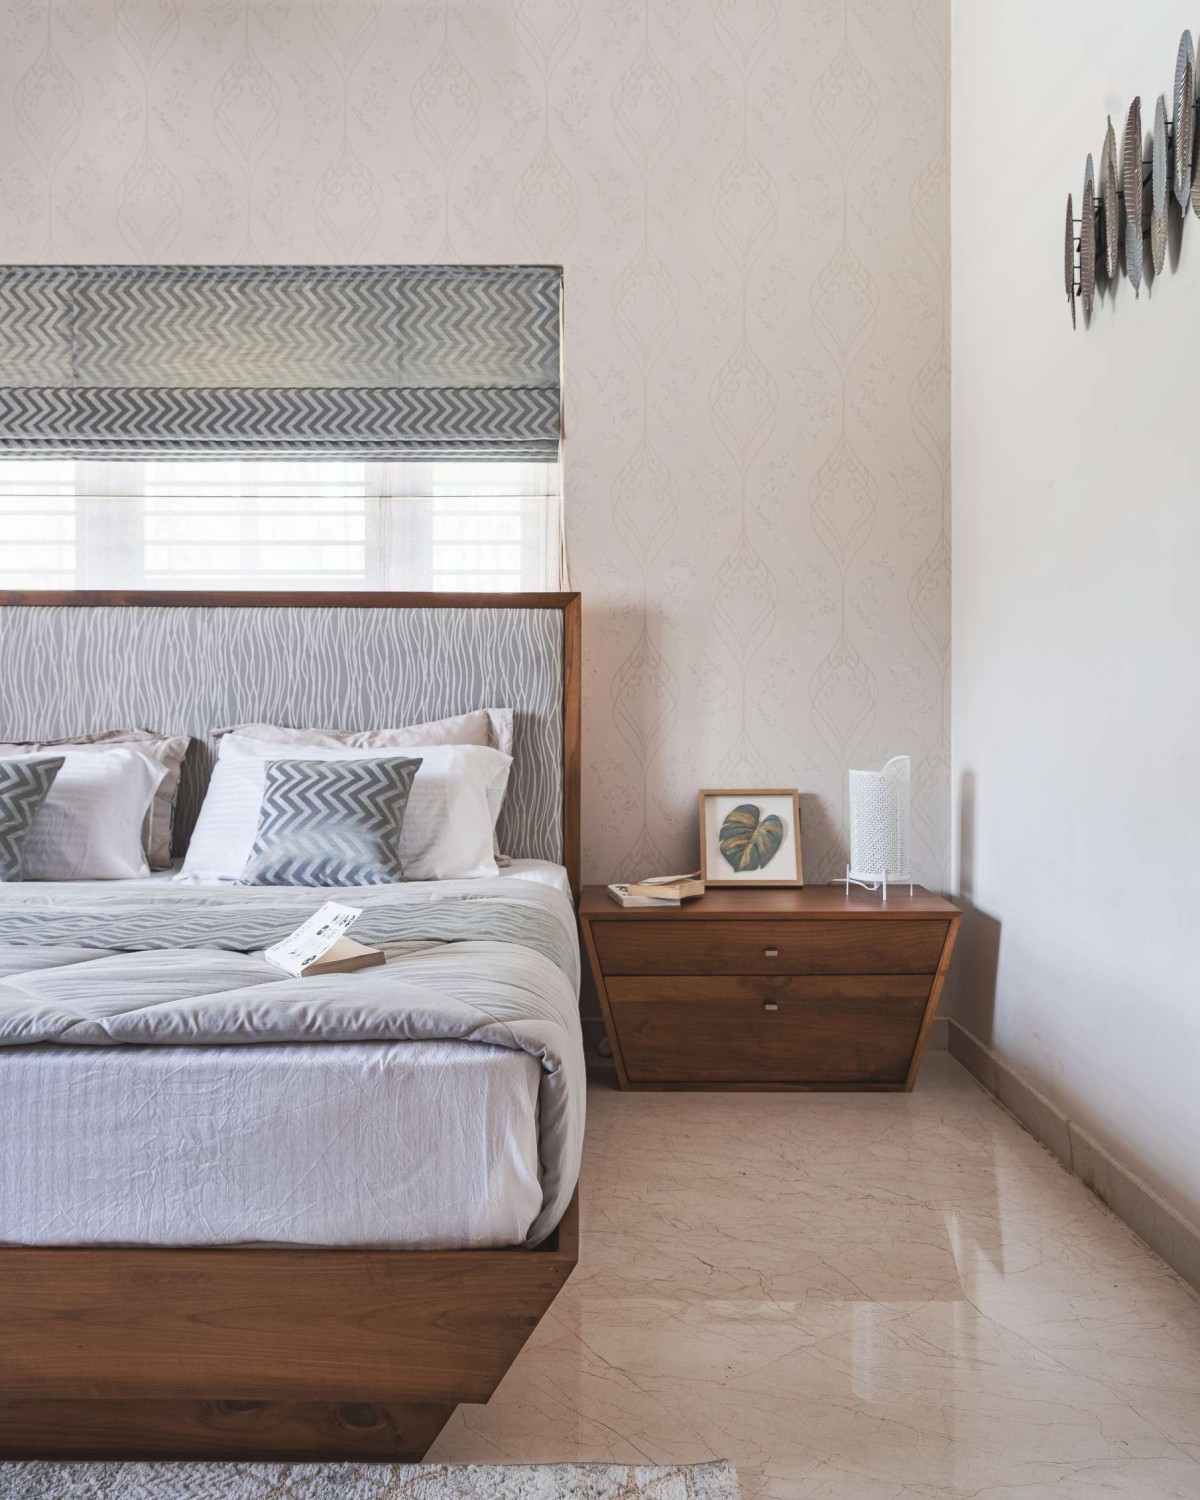 Bedroom 2 of Avant Garde by Prekshaa Design Studio